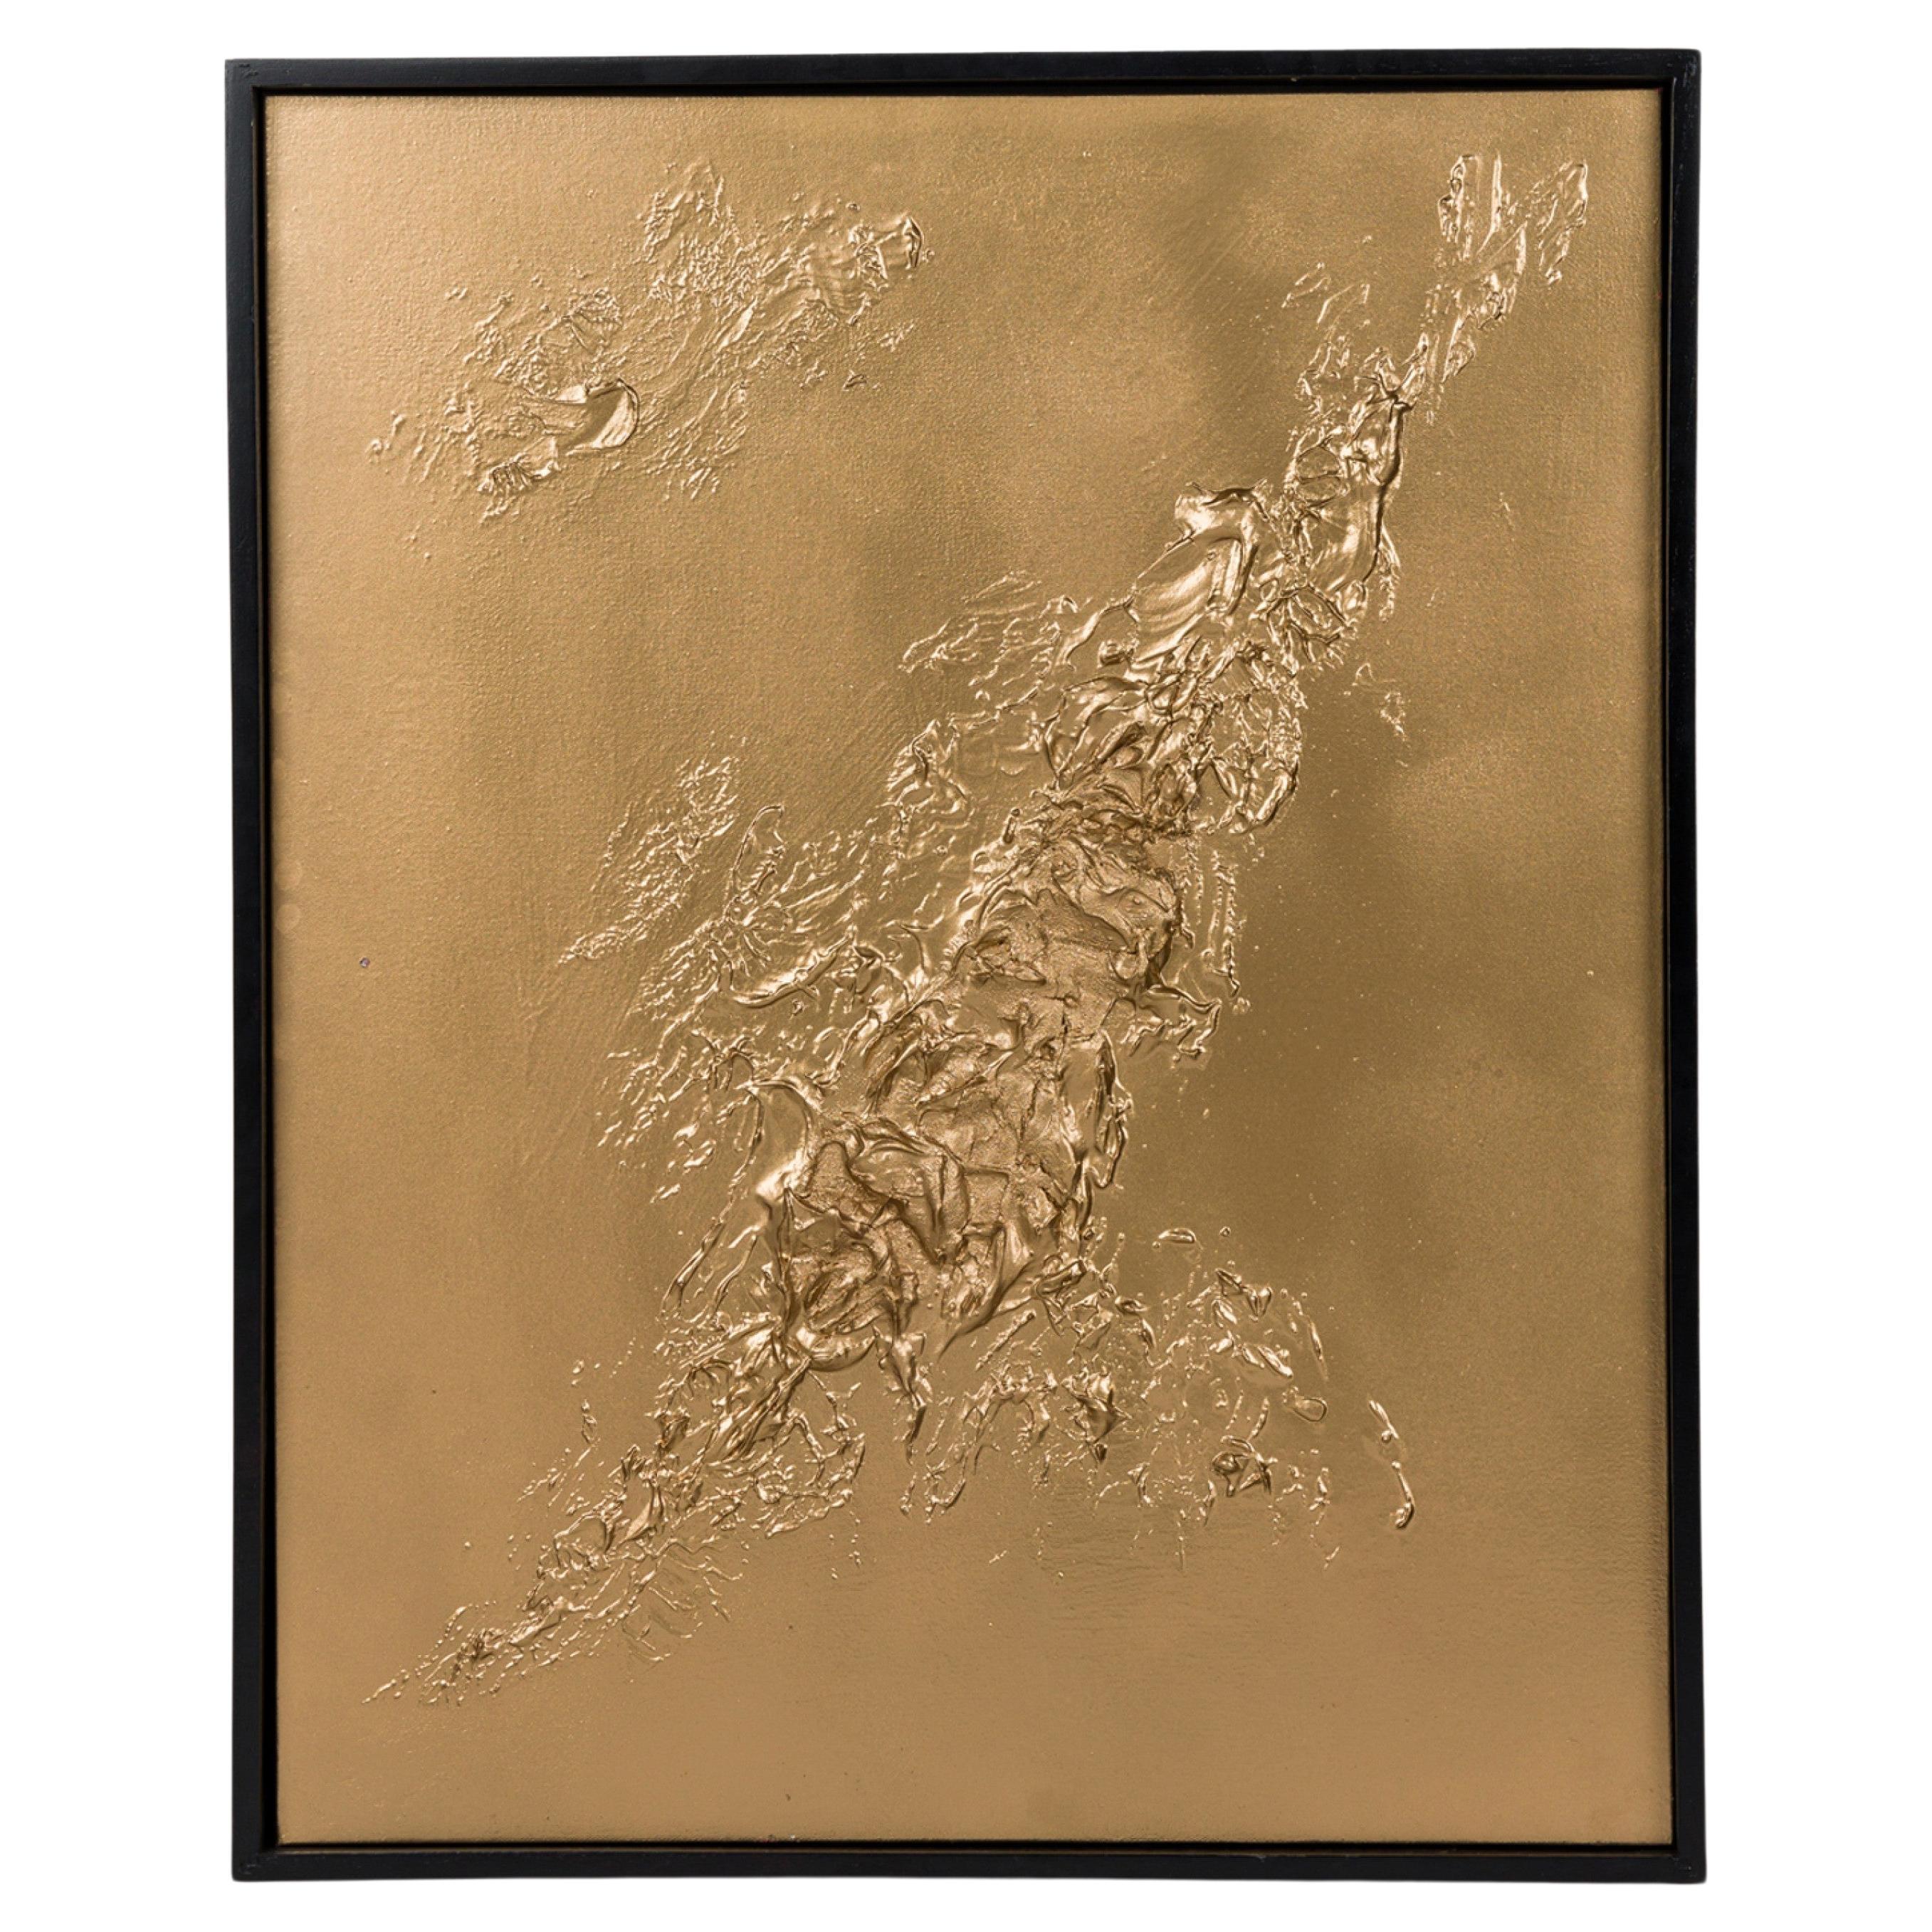 Encadré Contemporary Mixed Media Gold Textural Abstract Painting Barbara Kisko